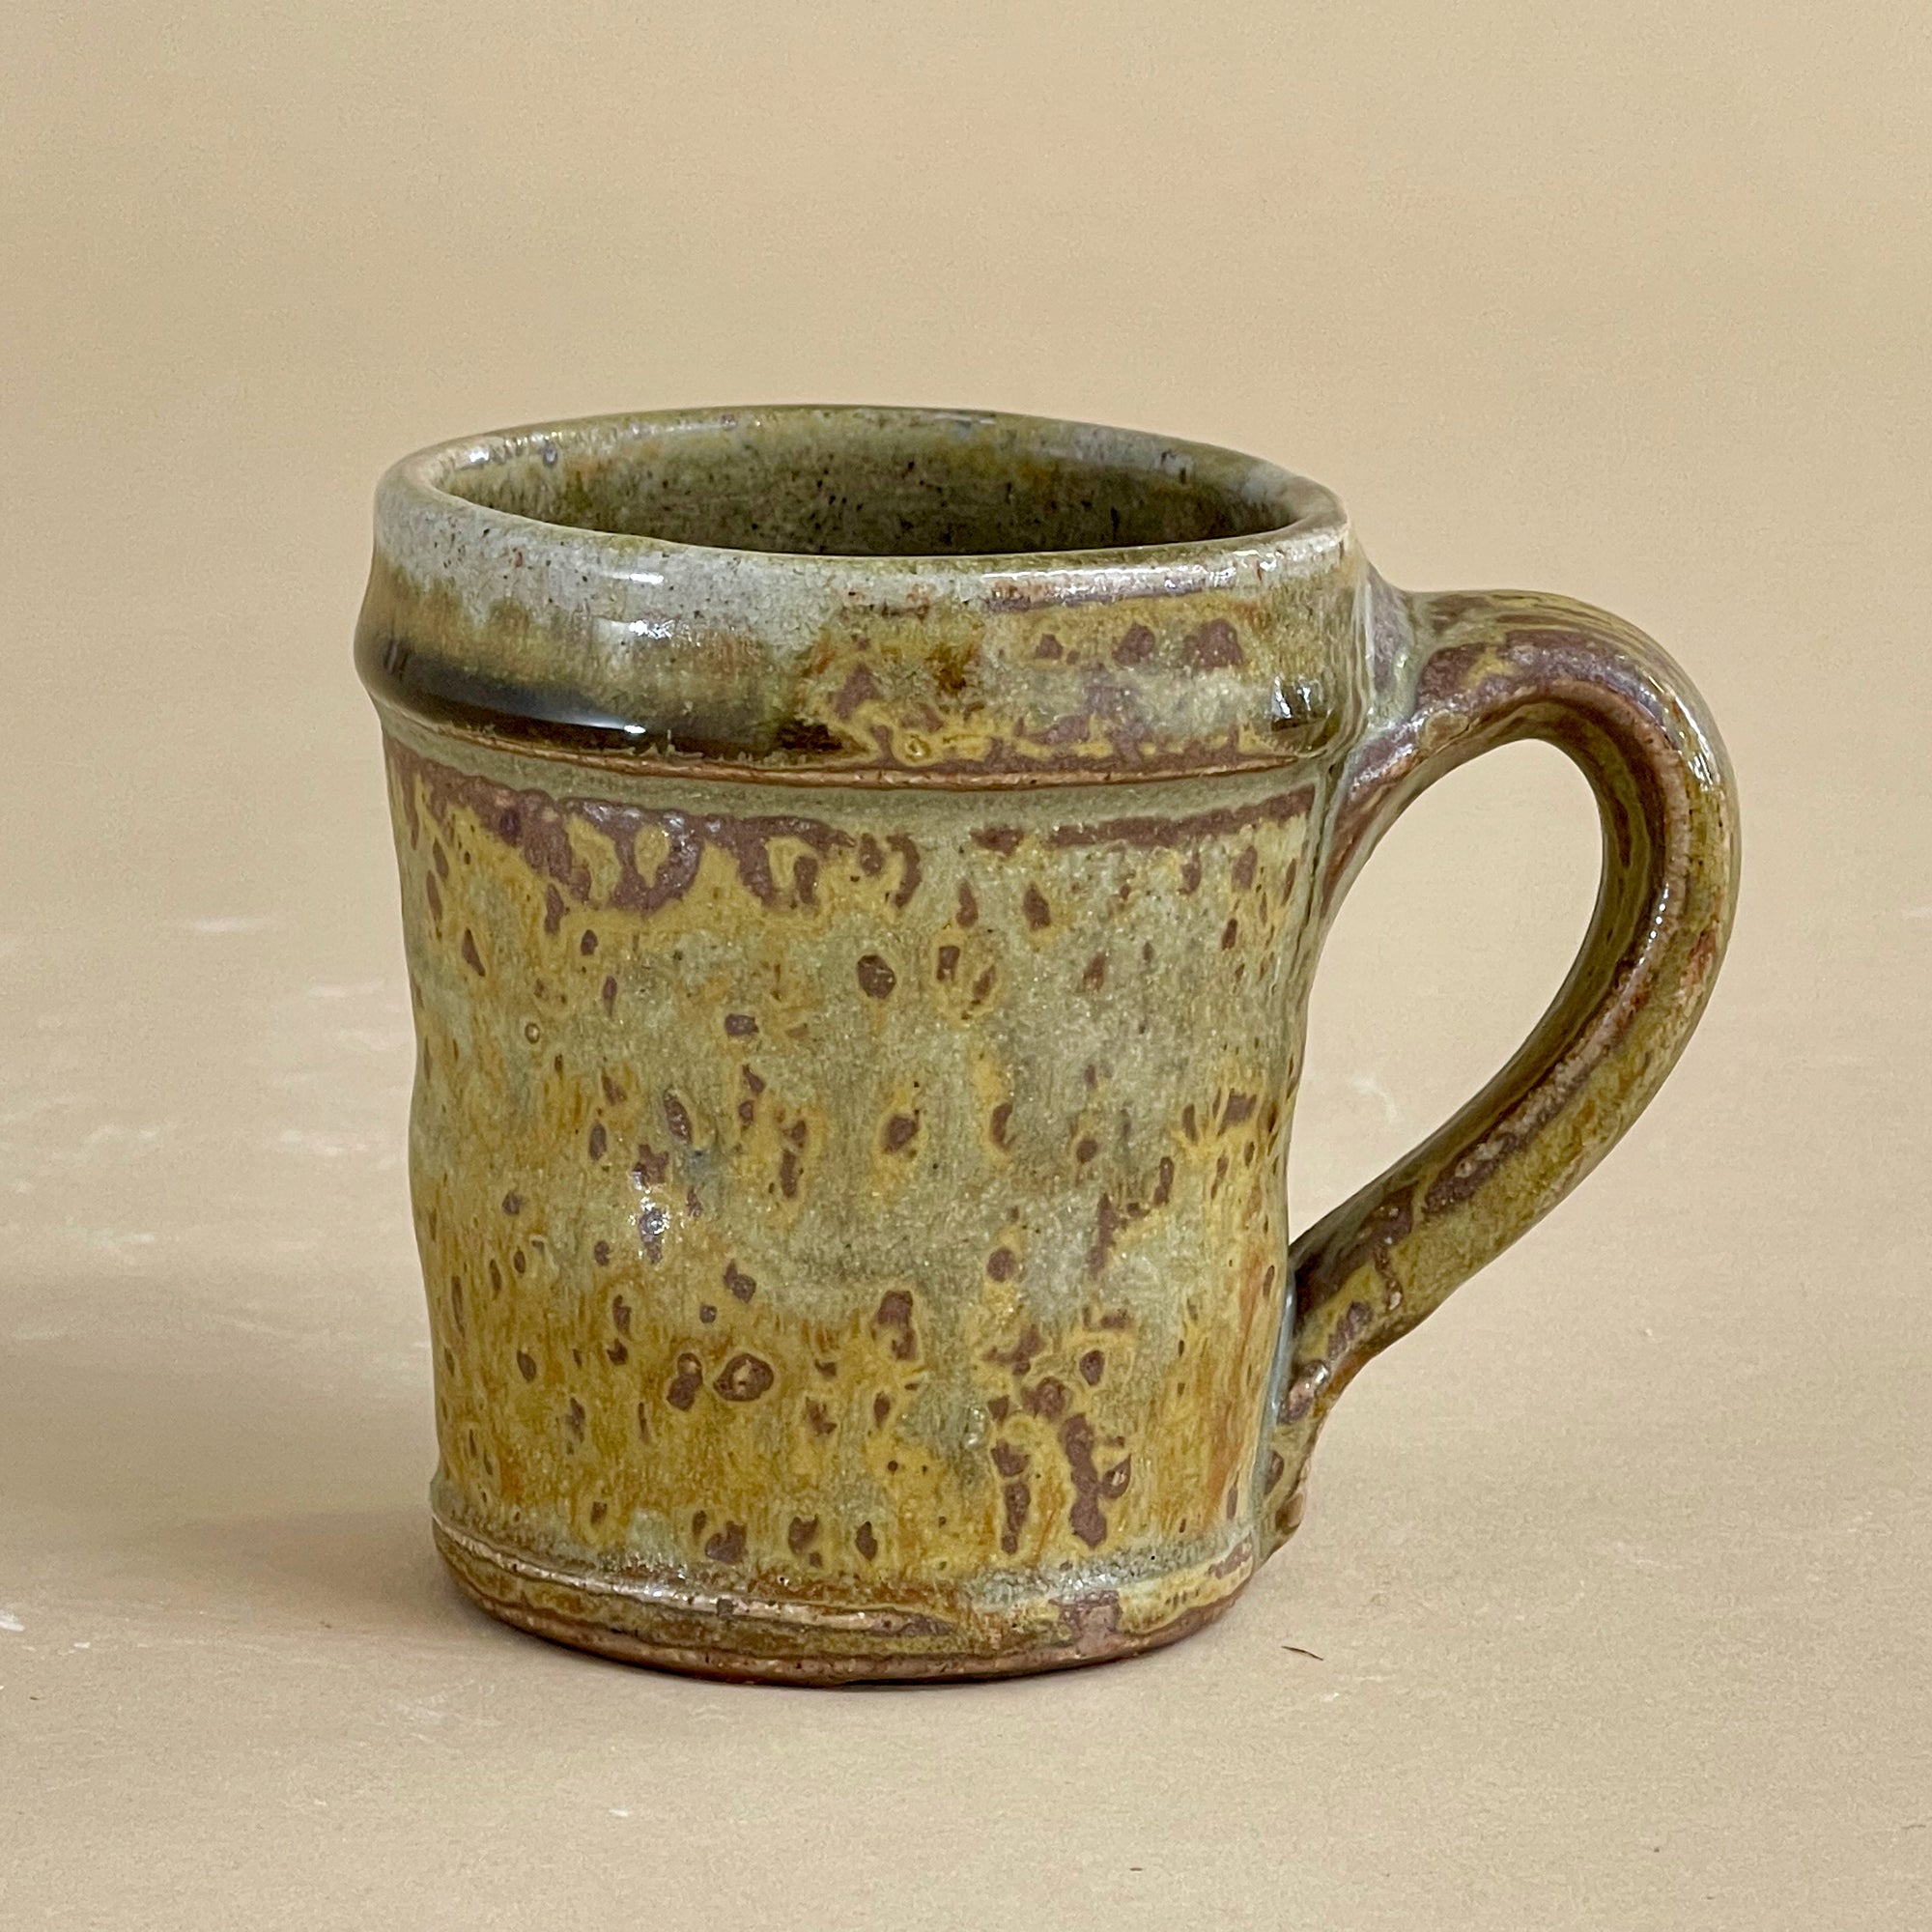 One of a Kind Soda Fired Glazed Mugs